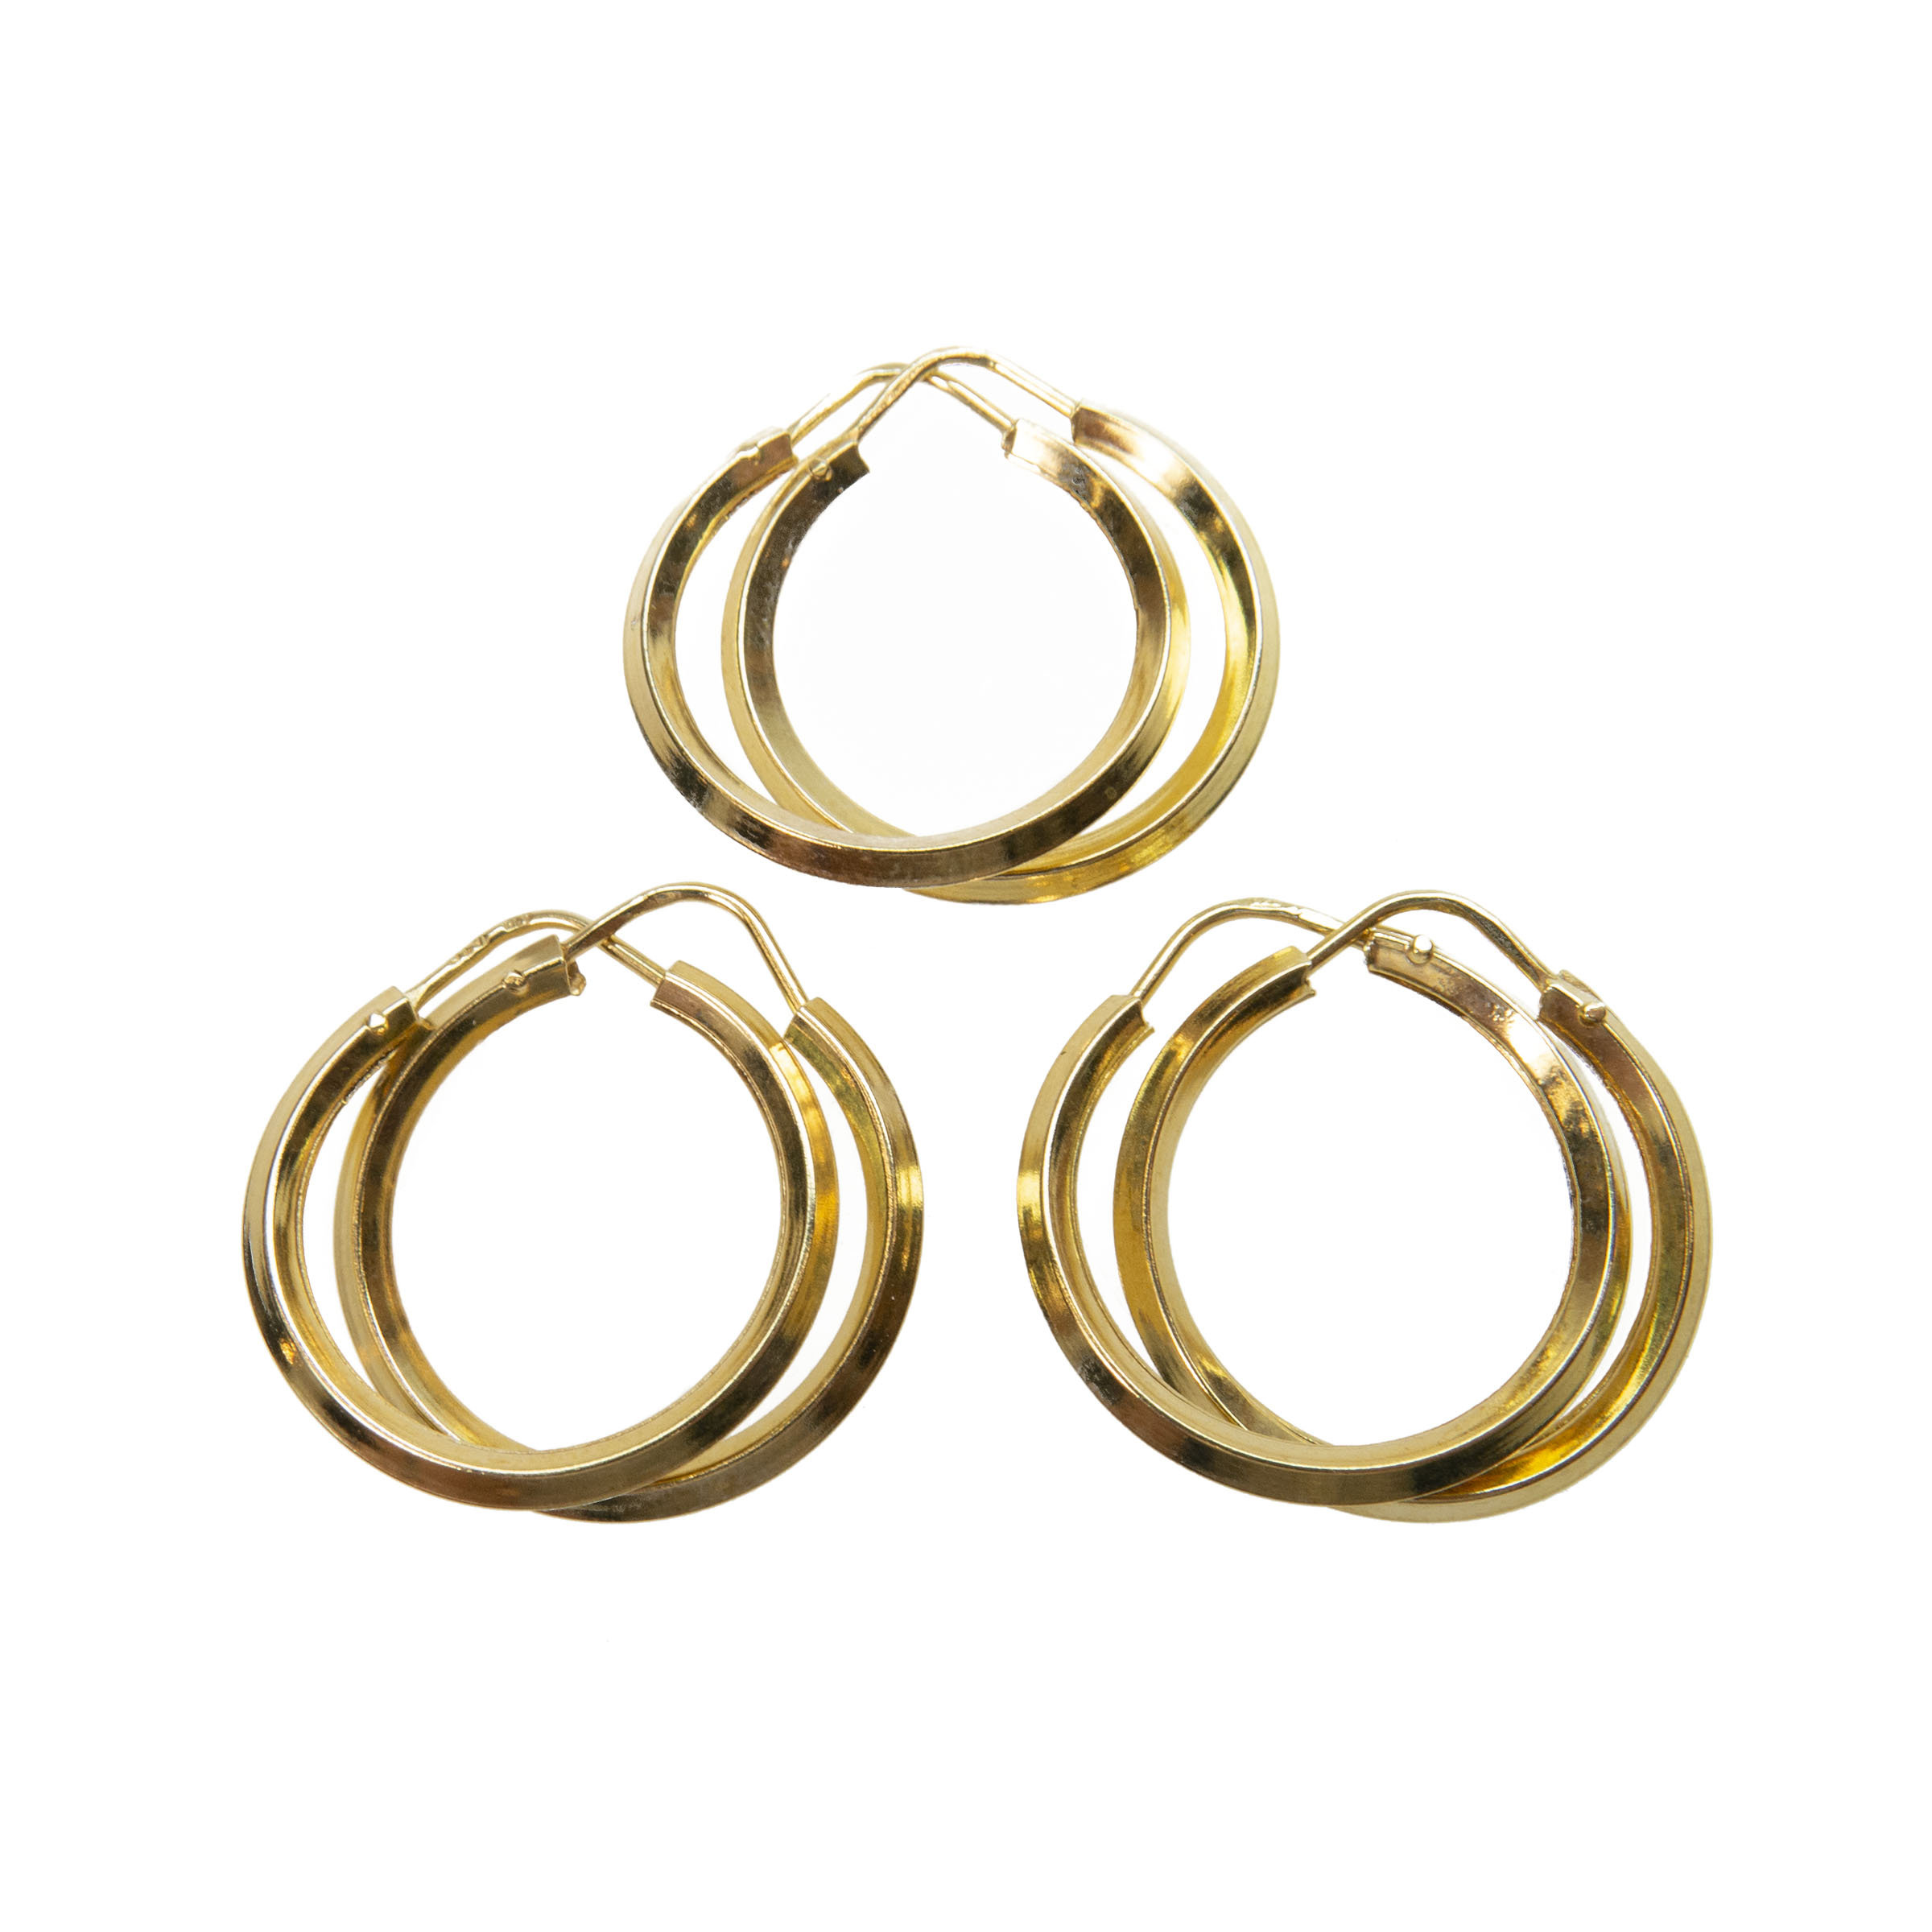 3 X Pairs Of 18K Yellow Gold Hoop Earrings